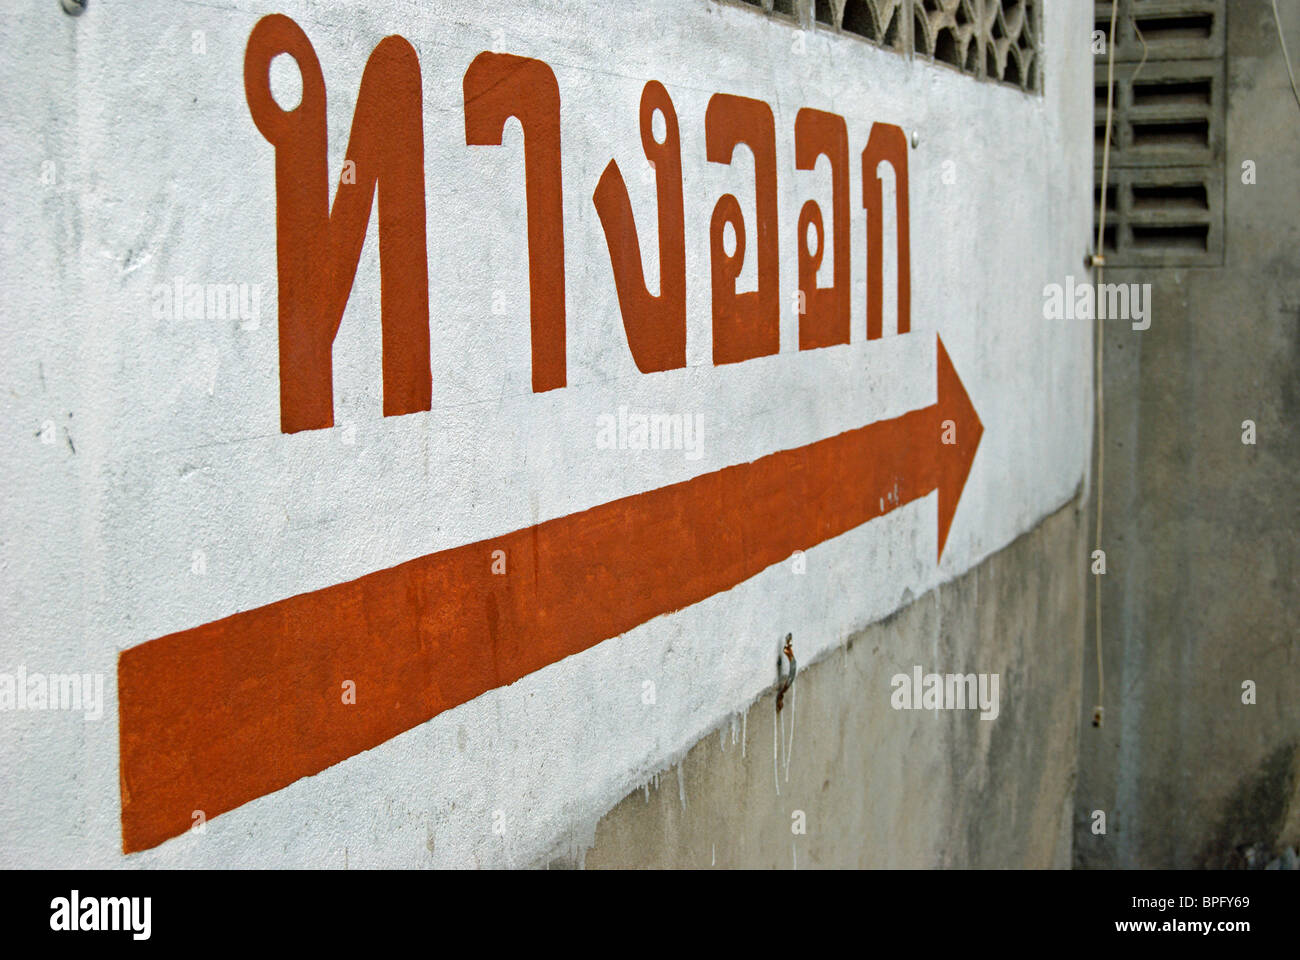 Signe de langue thaï dans un parking à phetchabun, Thaïlande, Asie du Sud-Est, en indiquant "issue" Banque D'Images